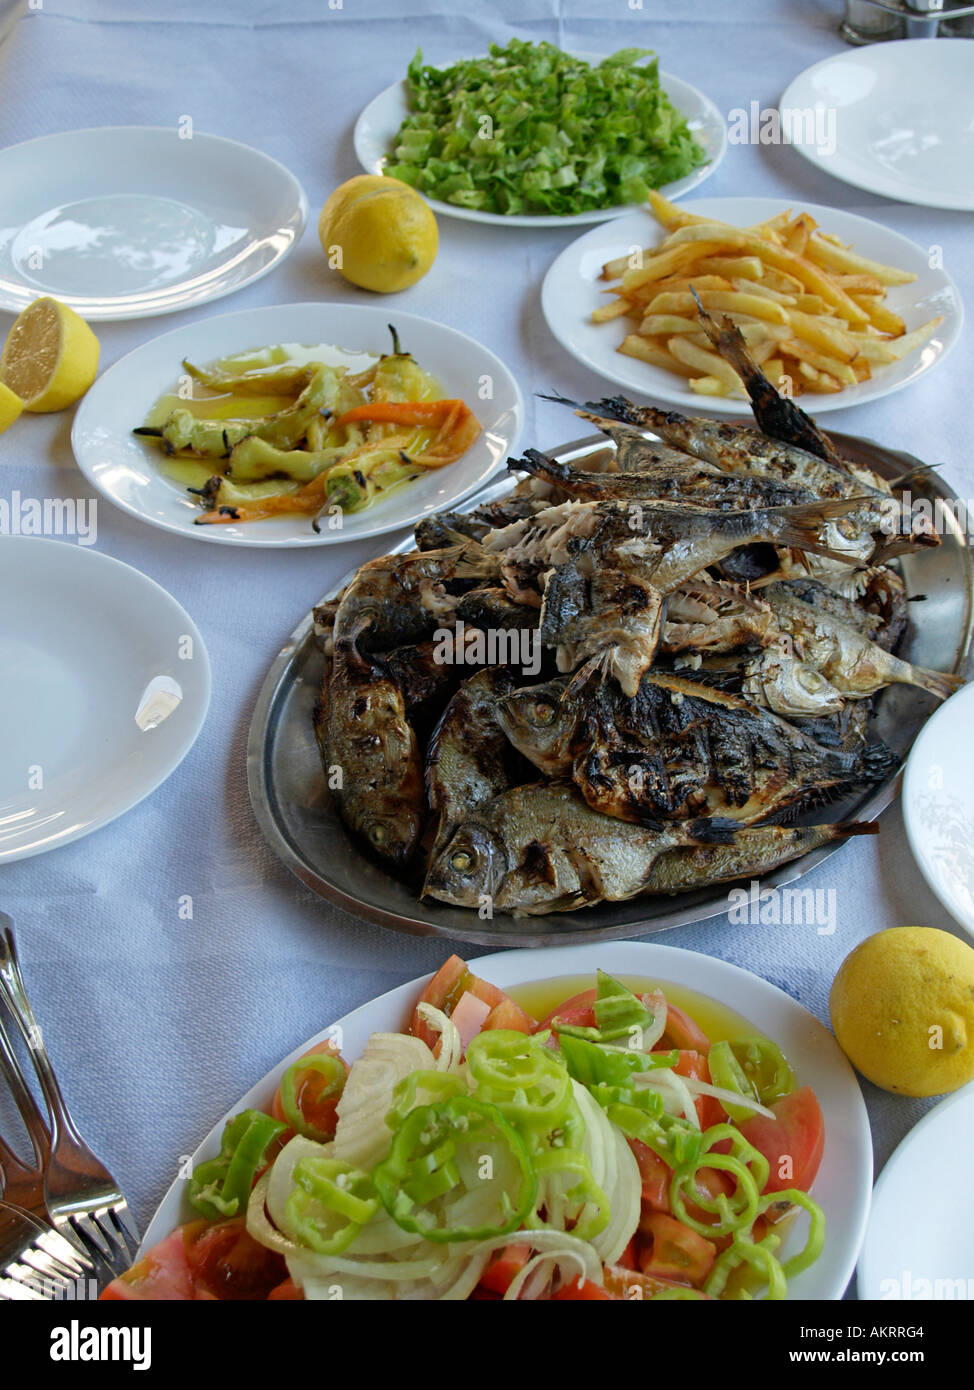 Típica comida Griega con pescado a la parrilla y ensaladas de verduras Foto de stock